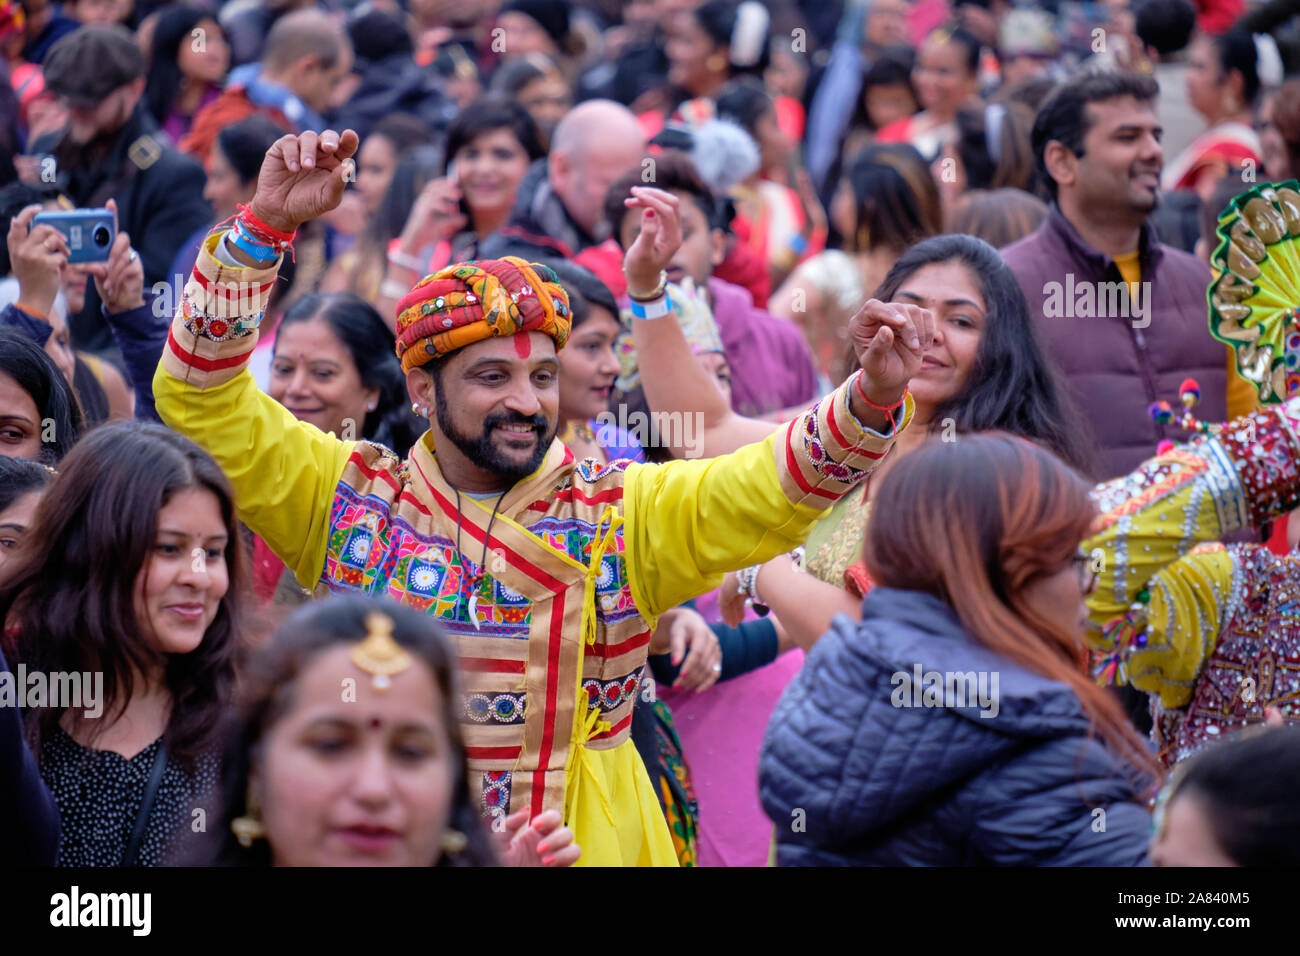 Abbigliamento tradizionale maschio indiano ballerini danzare nel mezzo della folla festante durante il Diwali celebrazioni a Londra, UK, 3 novembre 2019 Foto Stock